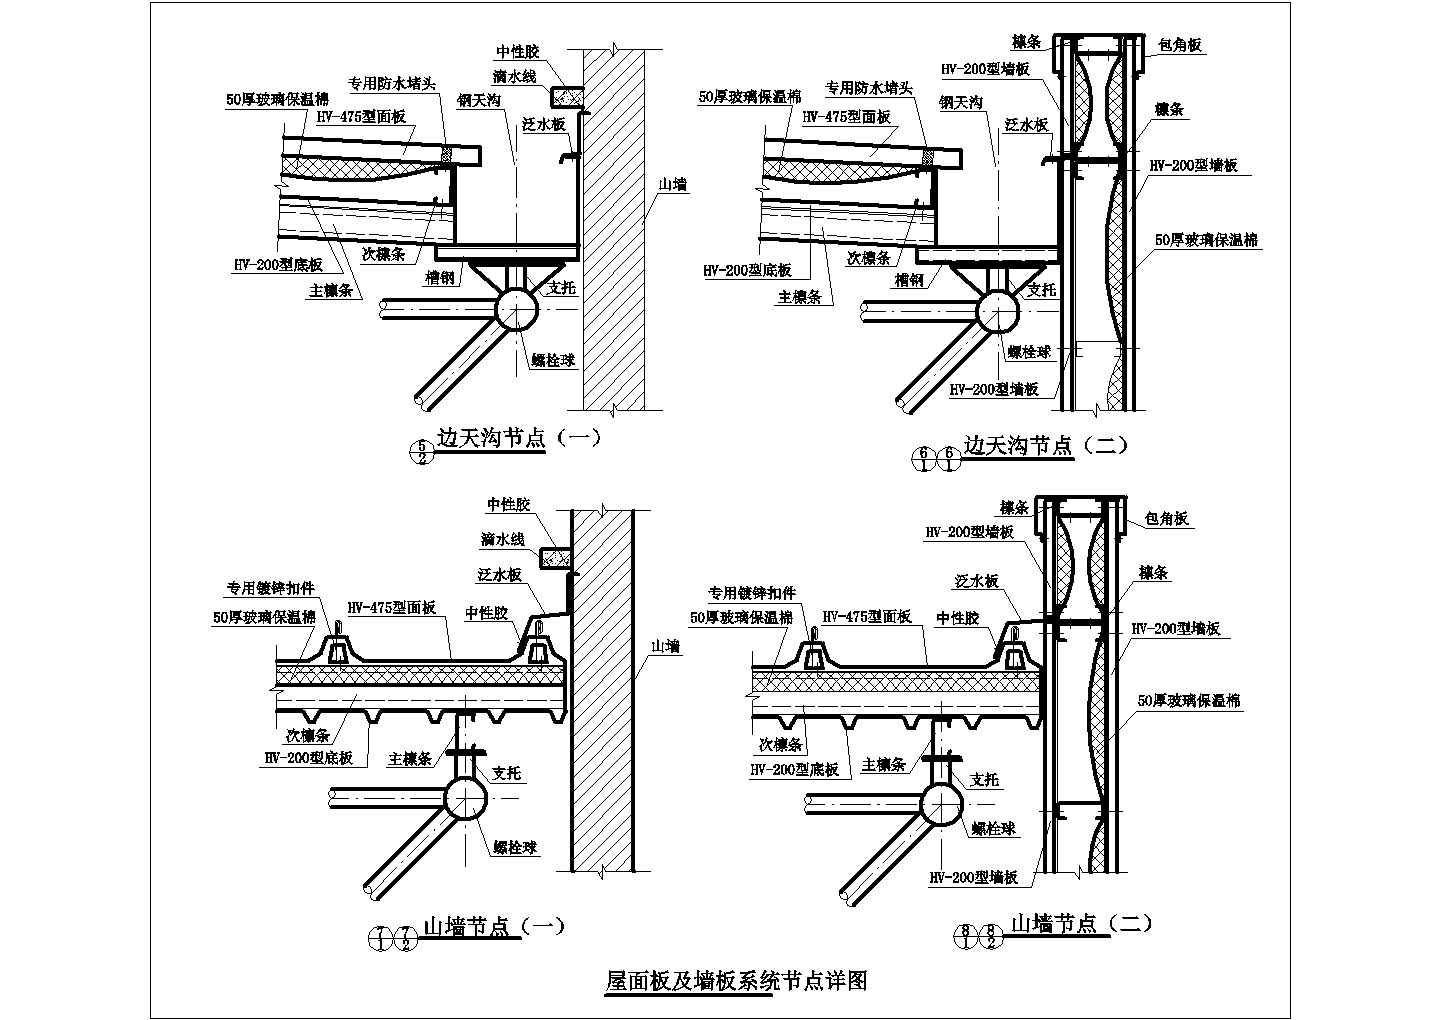 美式-全屋整装-竹木纤维板-保定三骏联通塑胶有限公司